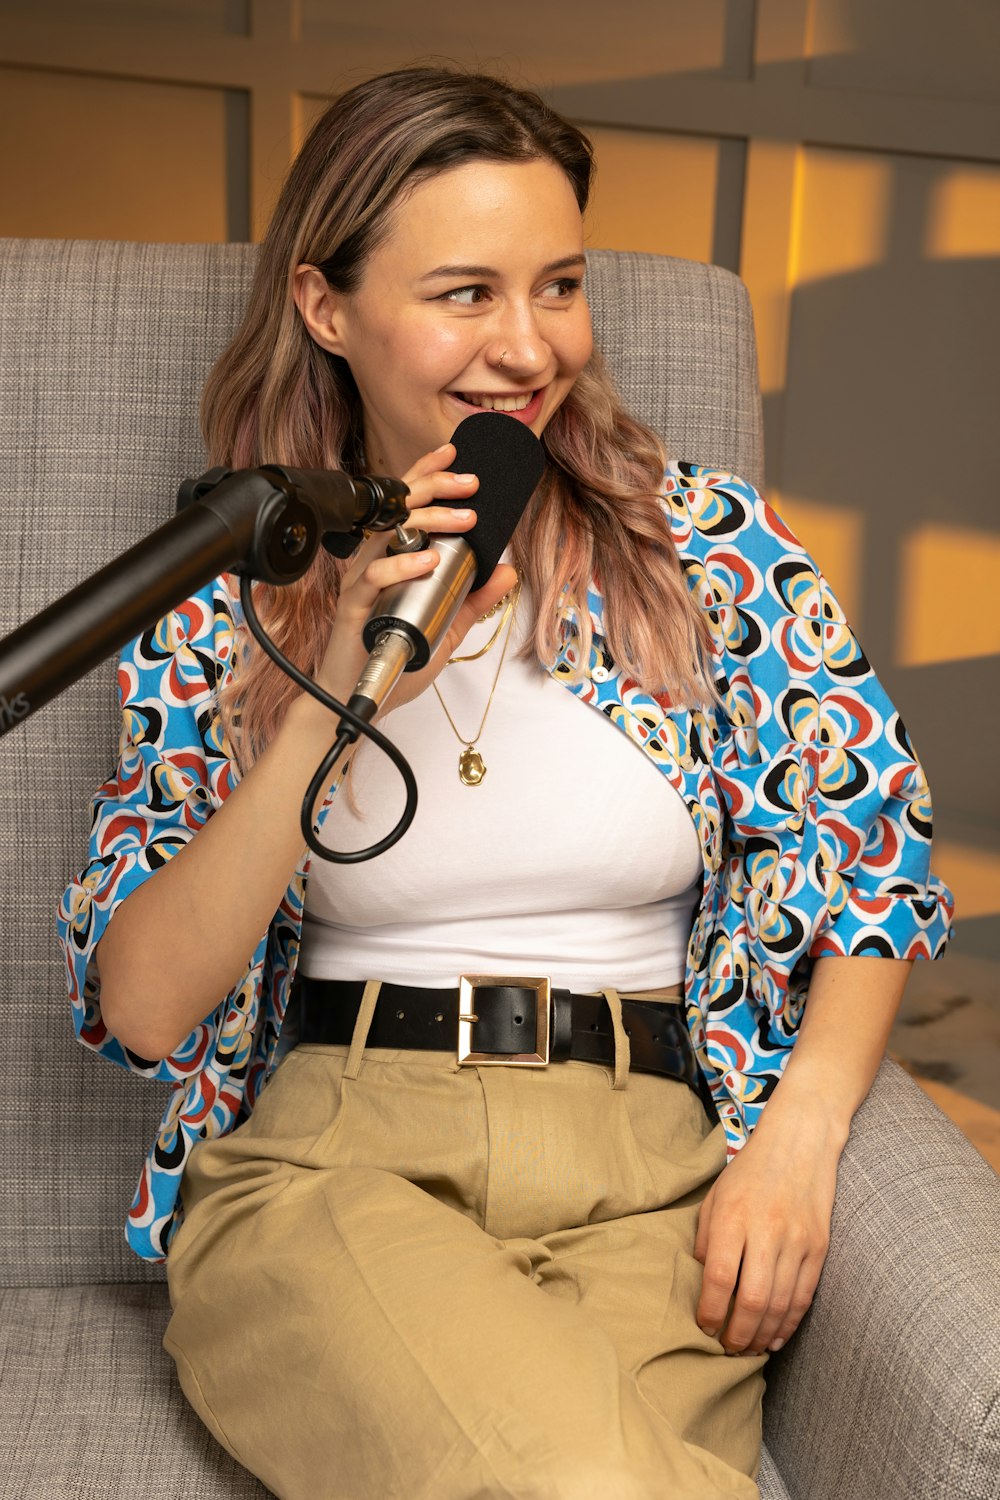 Una mujer sentada en una silla con un micrófono frente a ella